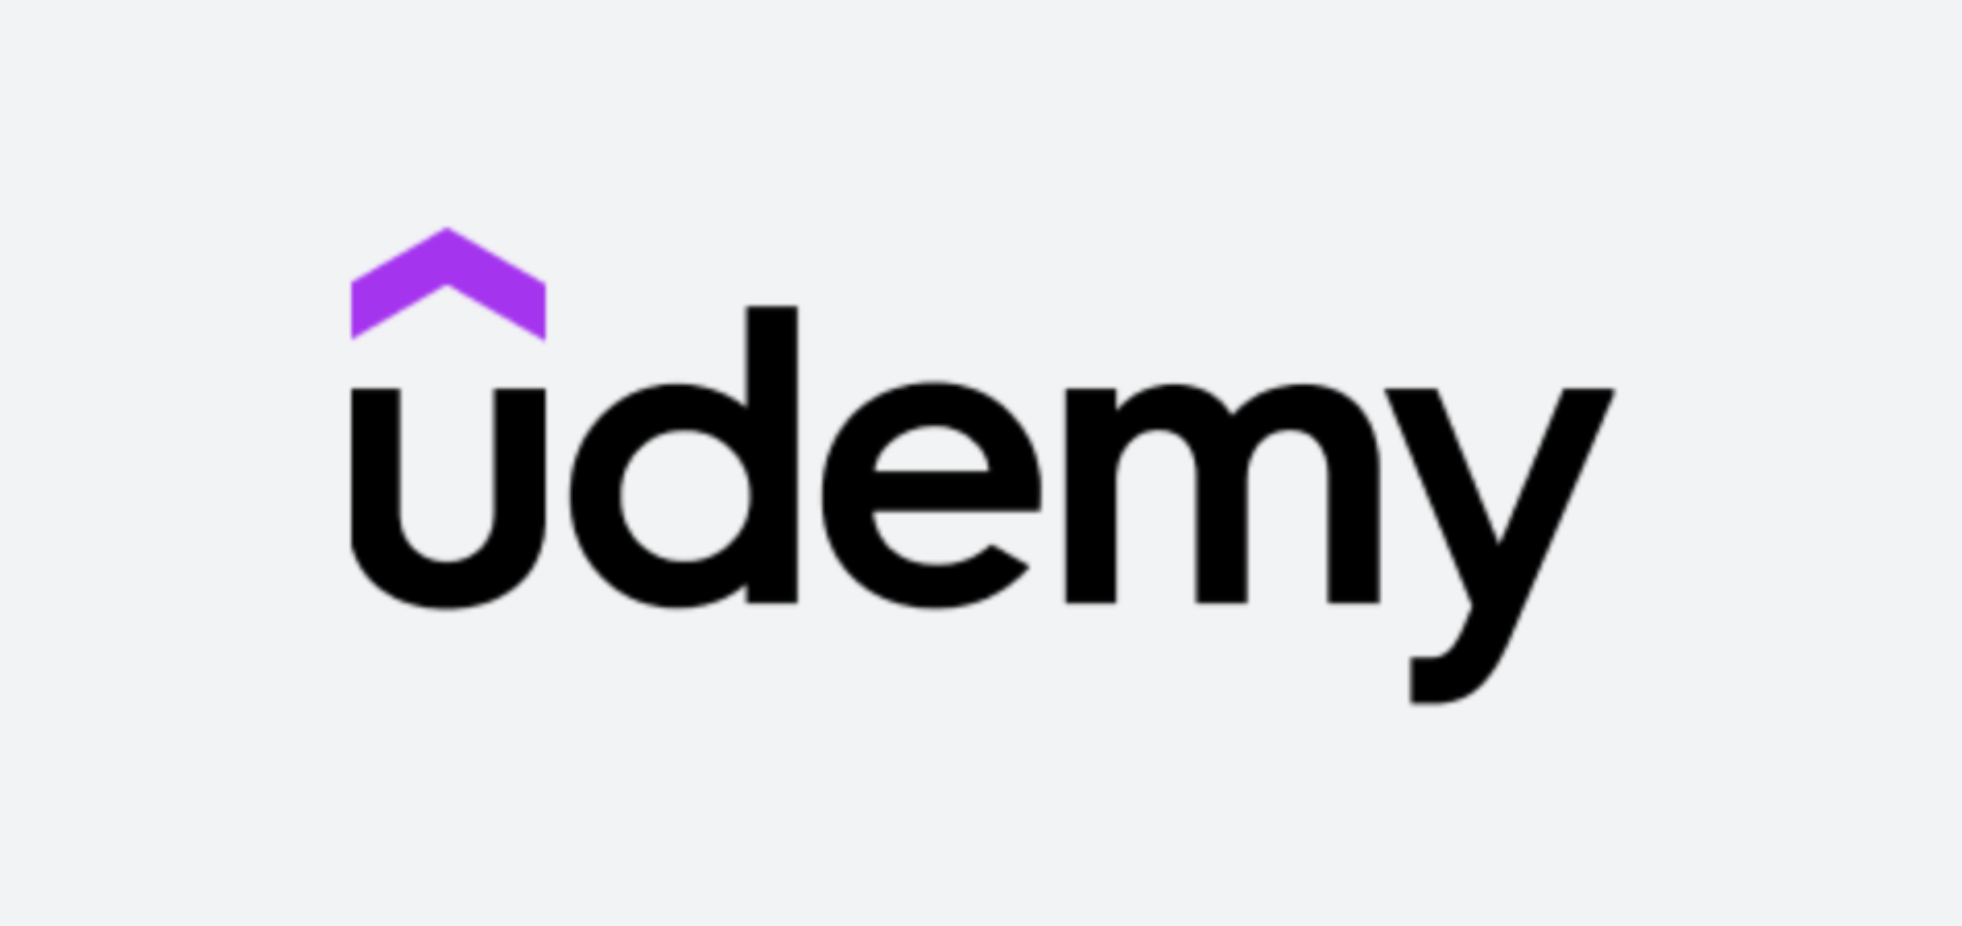 【Udemy】初心者エンジニアにUdemyの学習をおすすめする理由